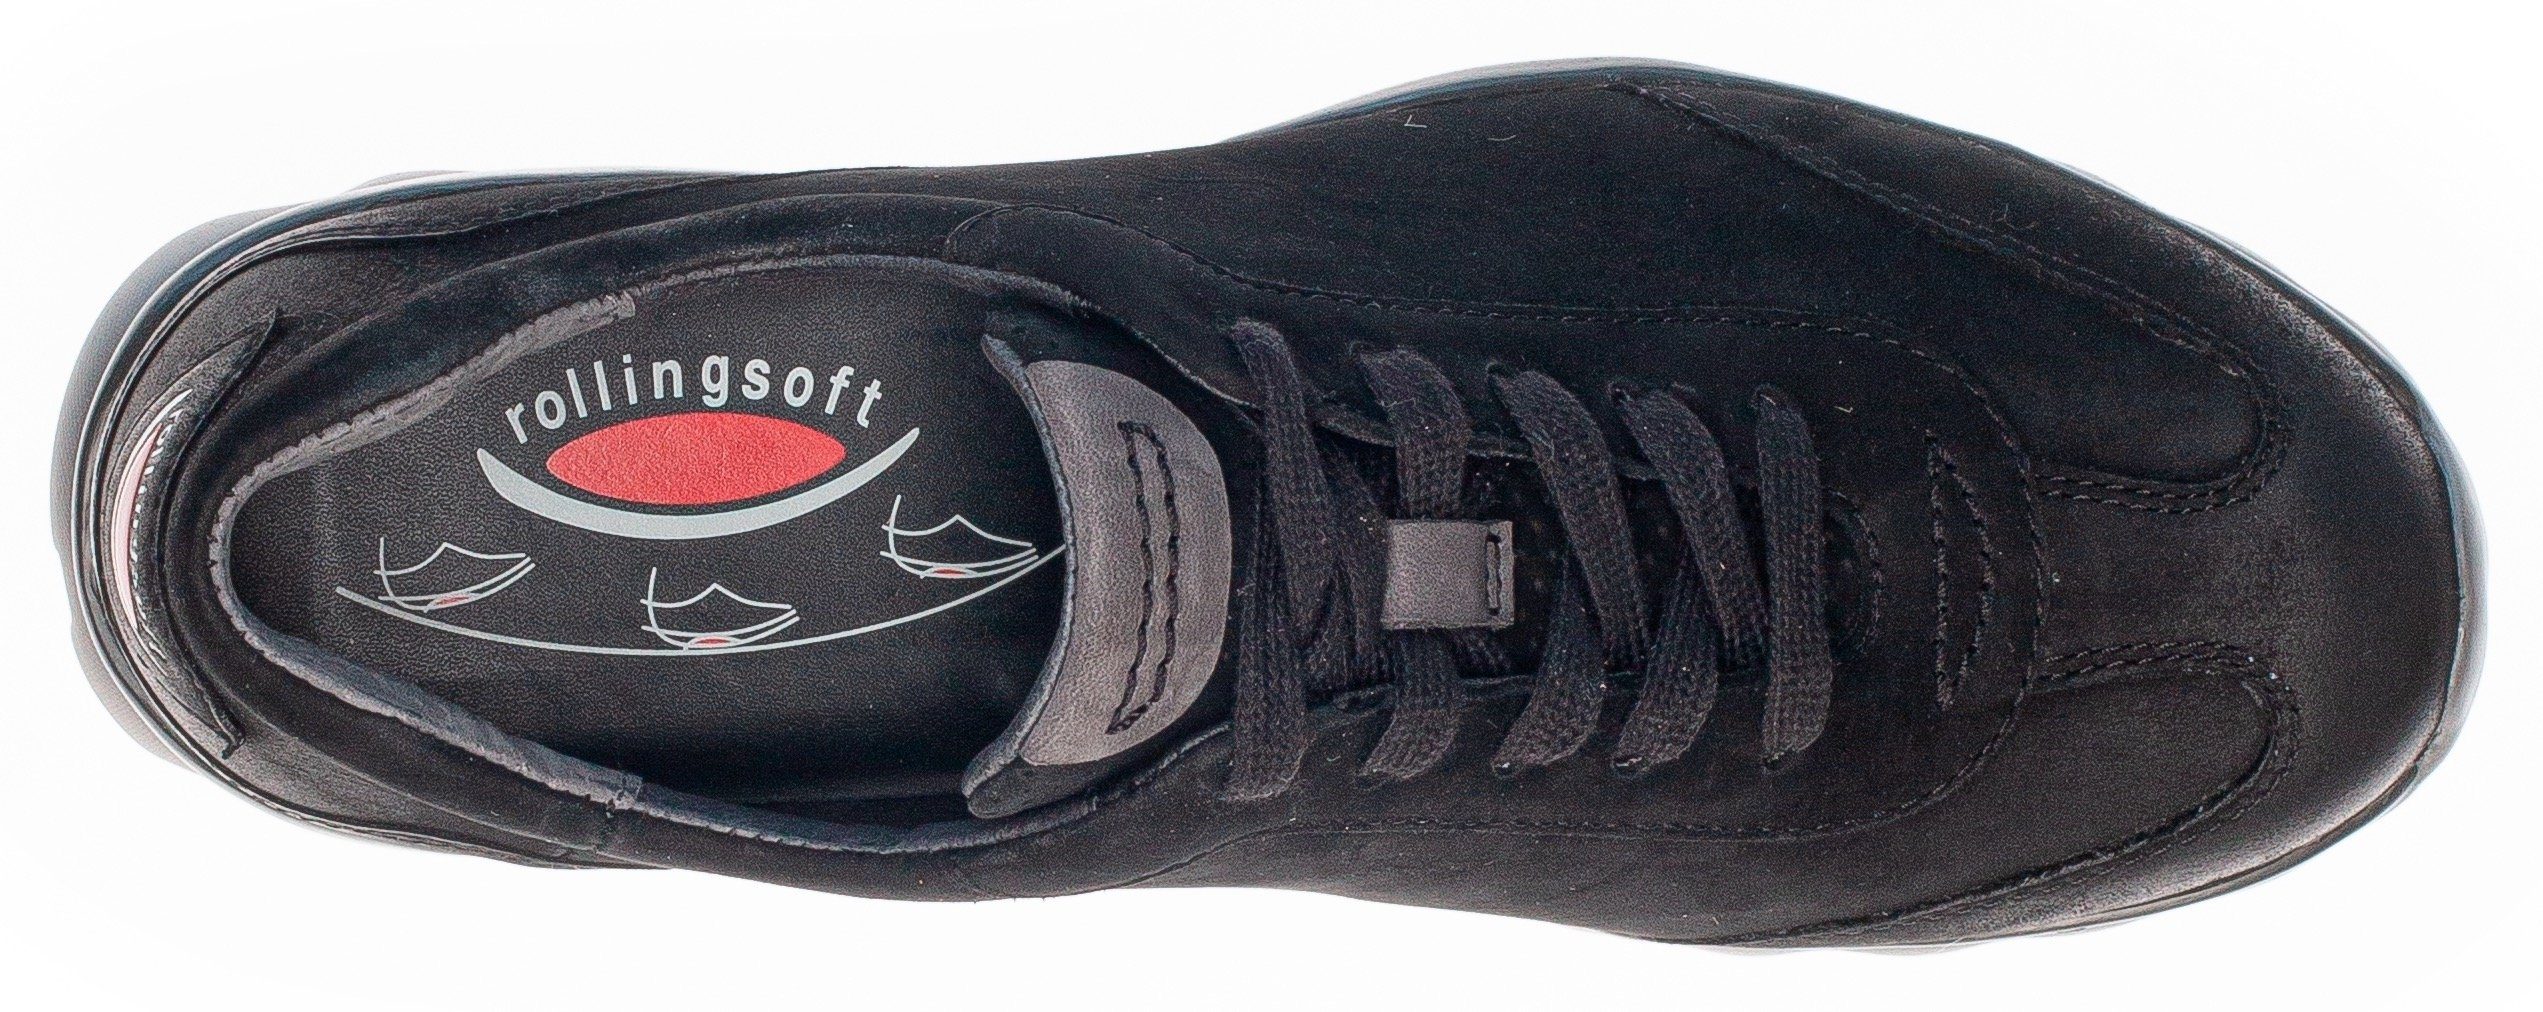 mit Keilsneaker schwarz an Ferse Logoschriftzug der Rollingsoft Gabor